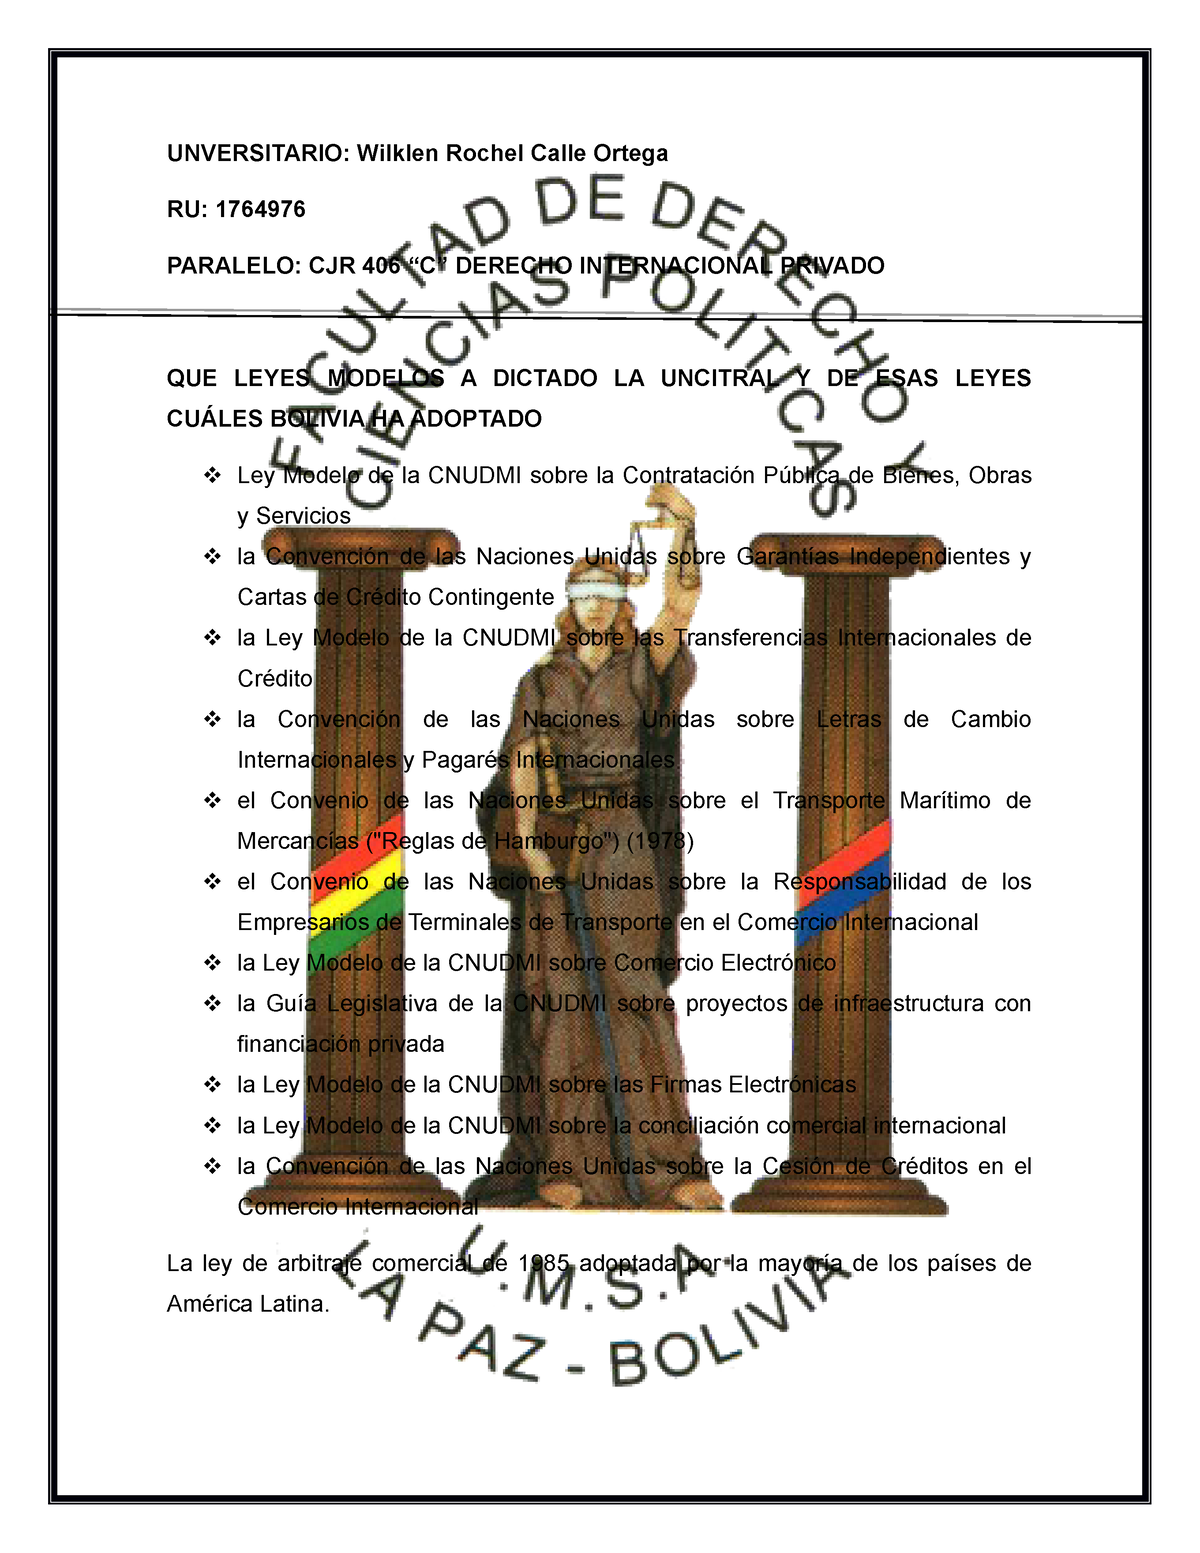 QUE Leyes Modelos A Dictado LA Uncitral Y DE ESAS Leyes Cuáles Bolivia HA  Adoptado - UNVERSITARIO: - Studocu